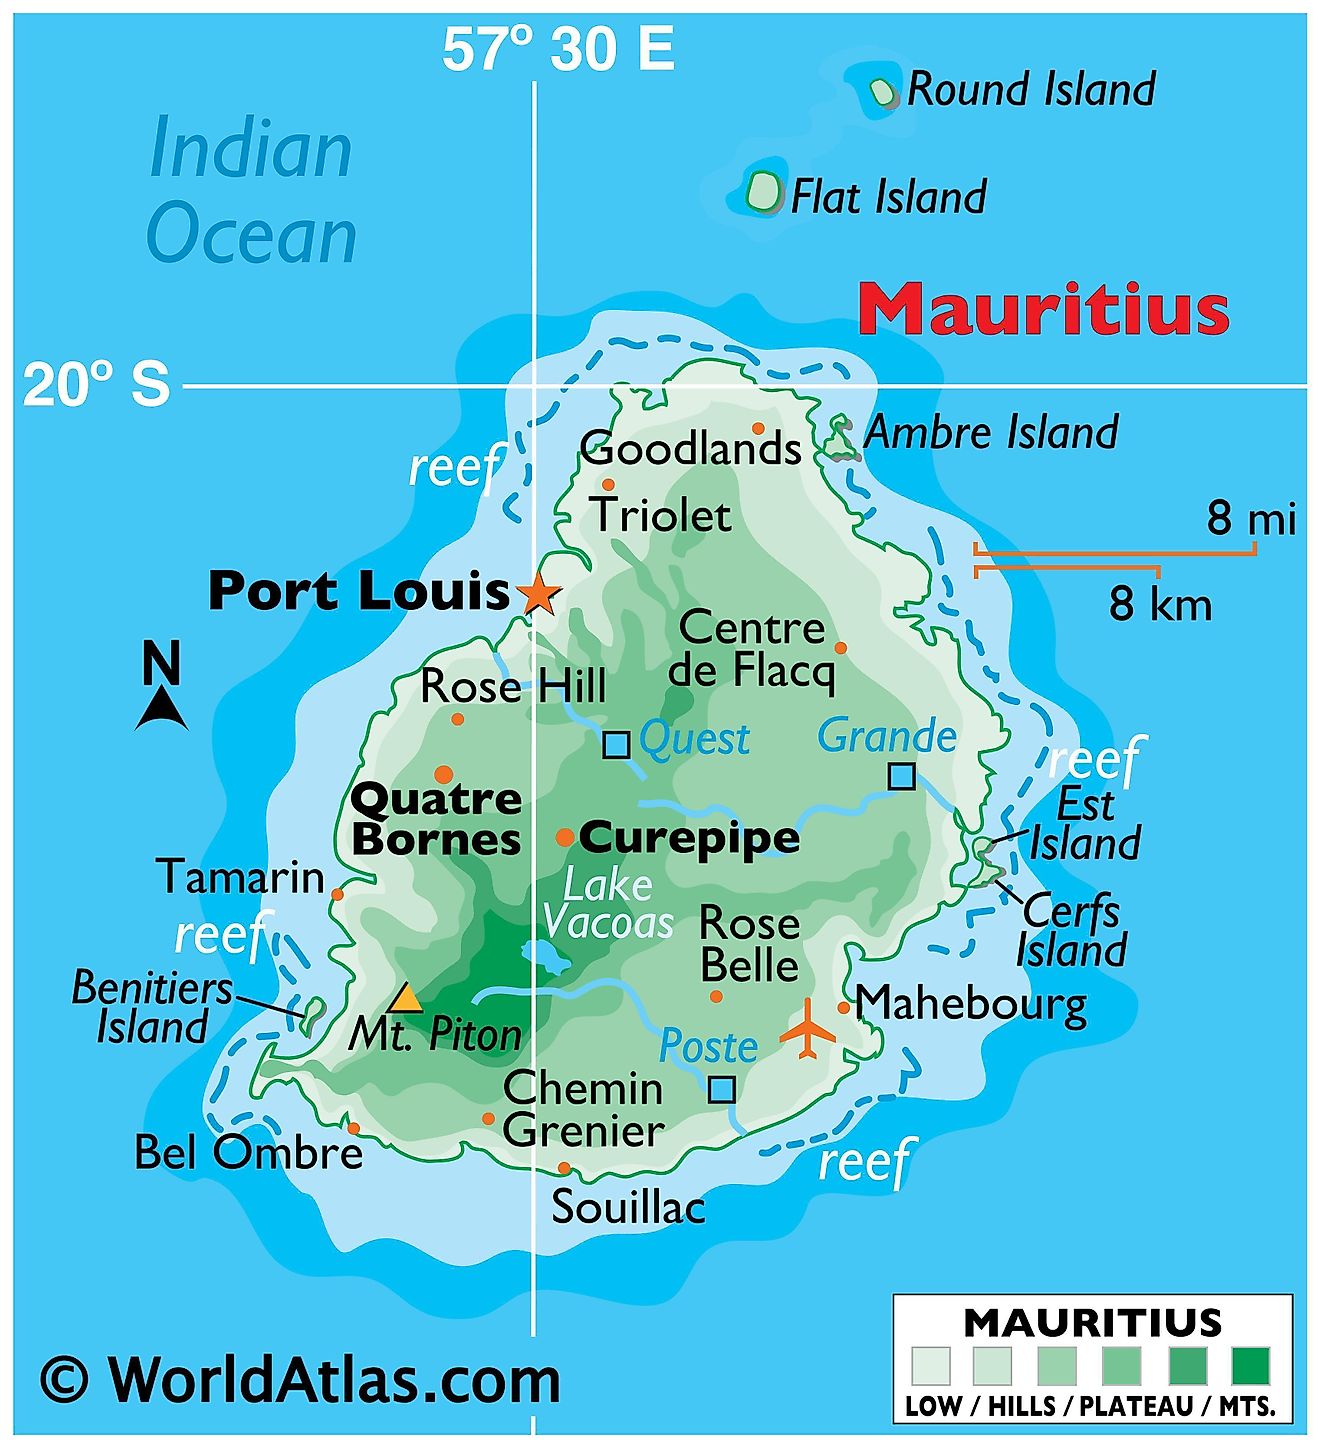 Mapa físico de Mauricio que muestra el relieve, las islas periféricas, el pico más alto, los lagos, el río principal y las ciudades importantes.